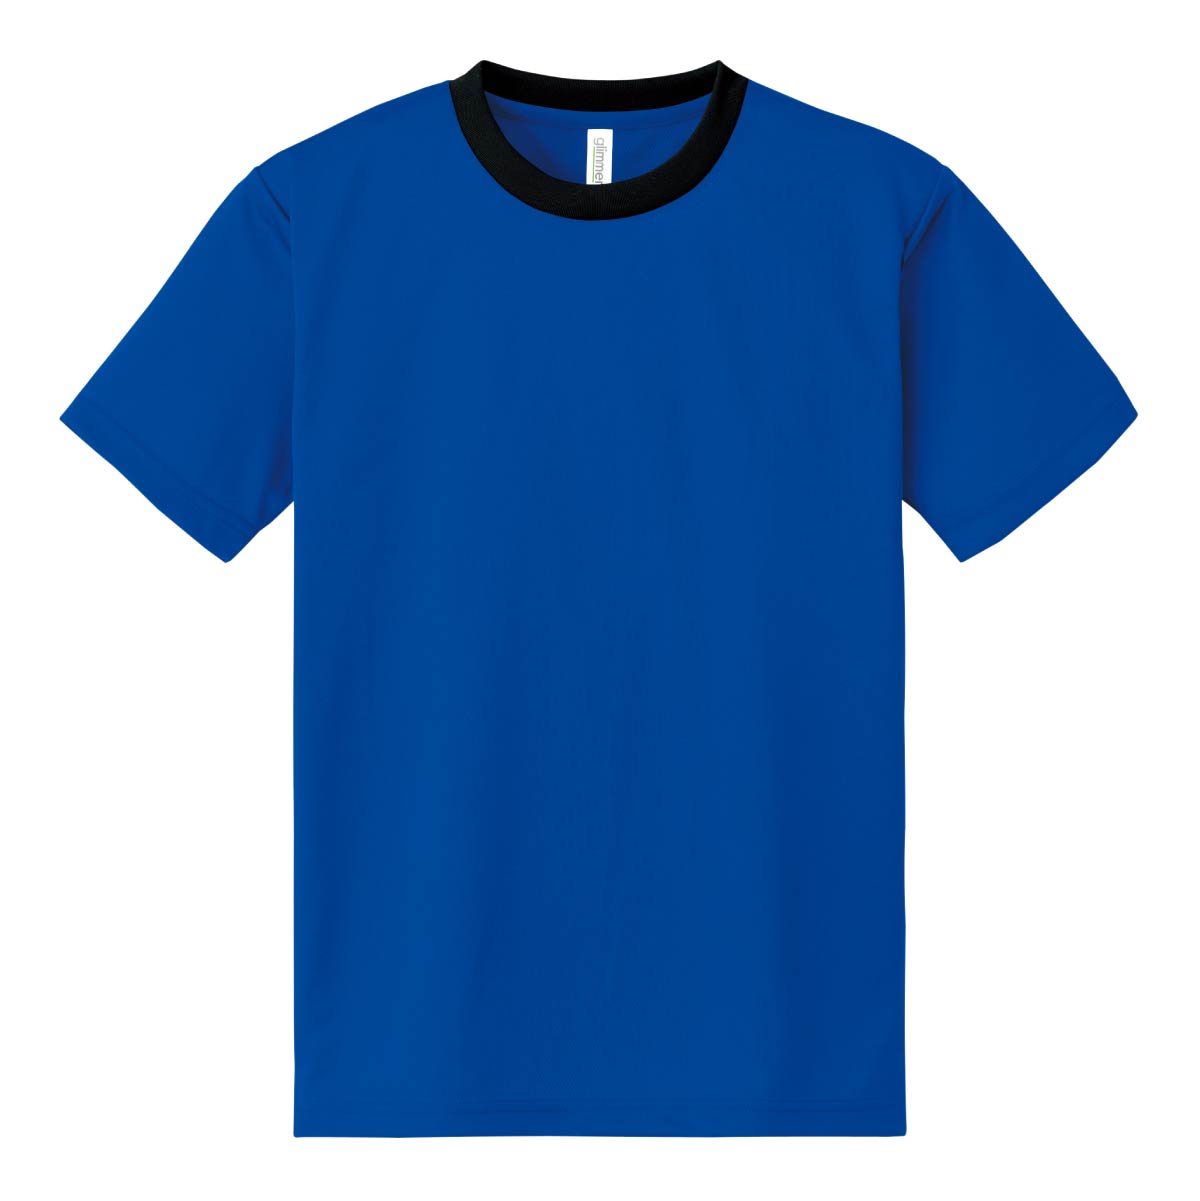 新作特価セール ハンドメイド 100cm〜120cm Tシャツ トップス(Tシャツ/カットソー)